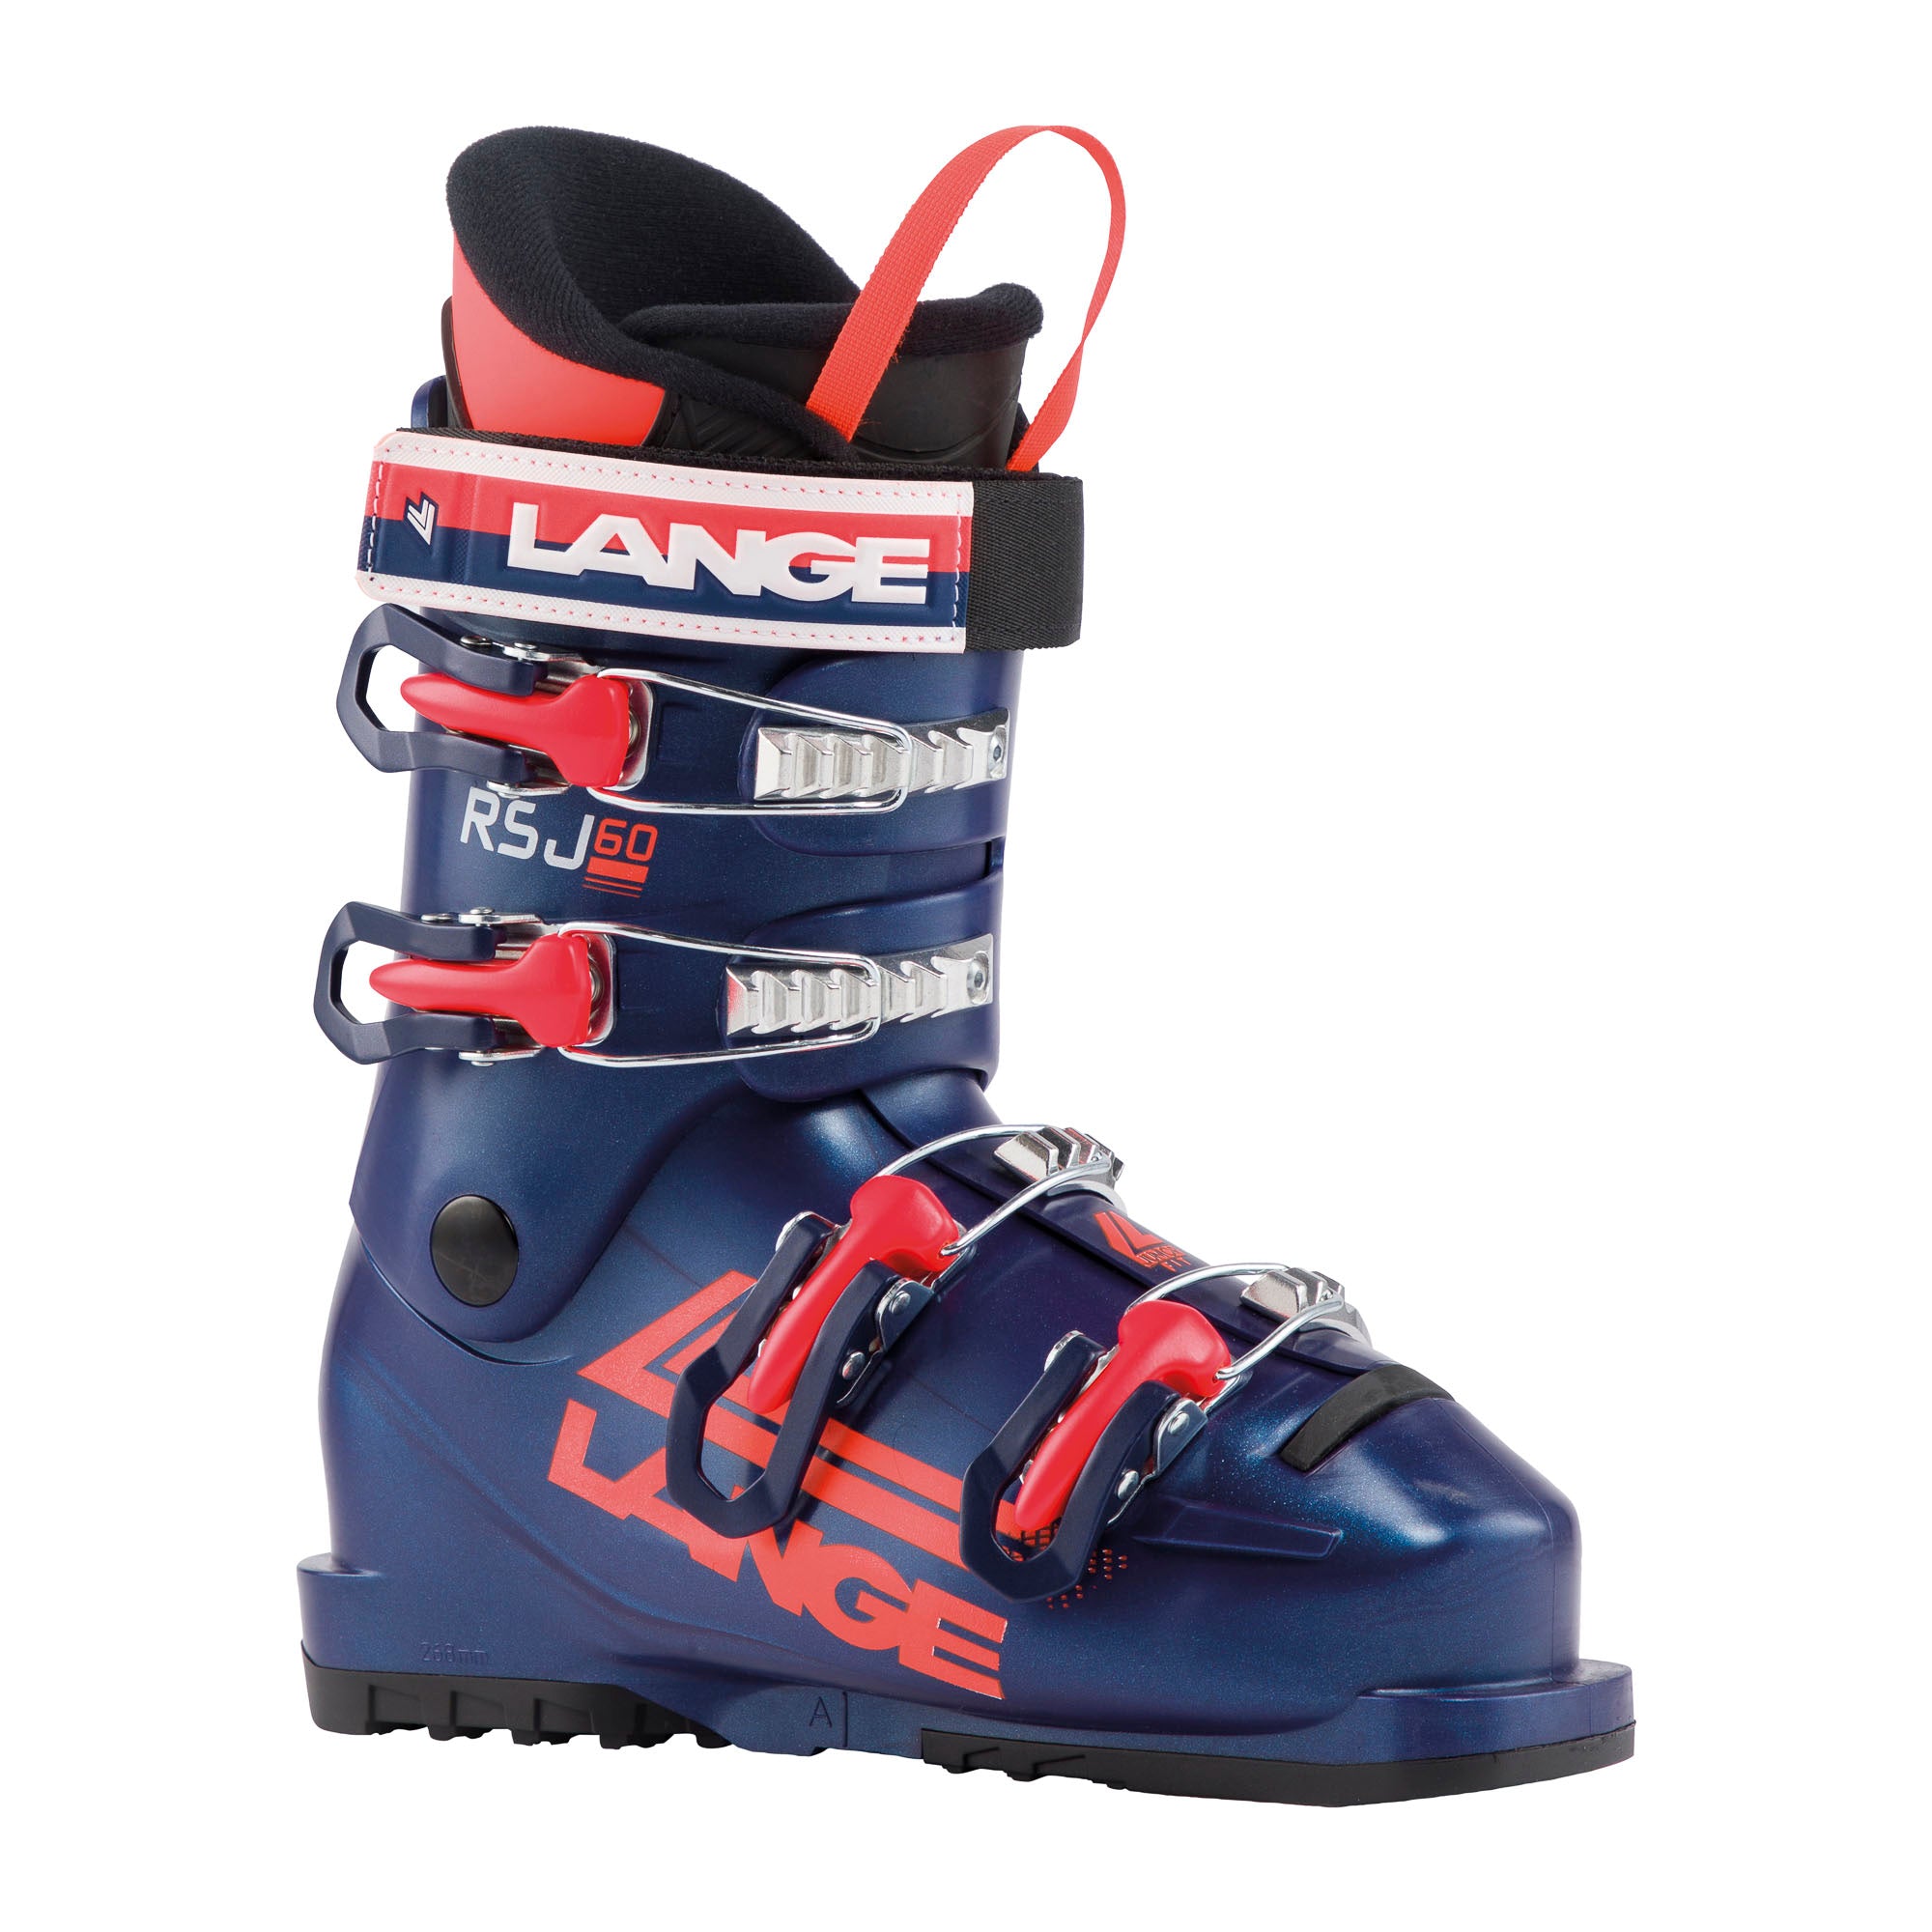 Junior Lange RSJ 60 ski boot, dark blue with neon red accents.